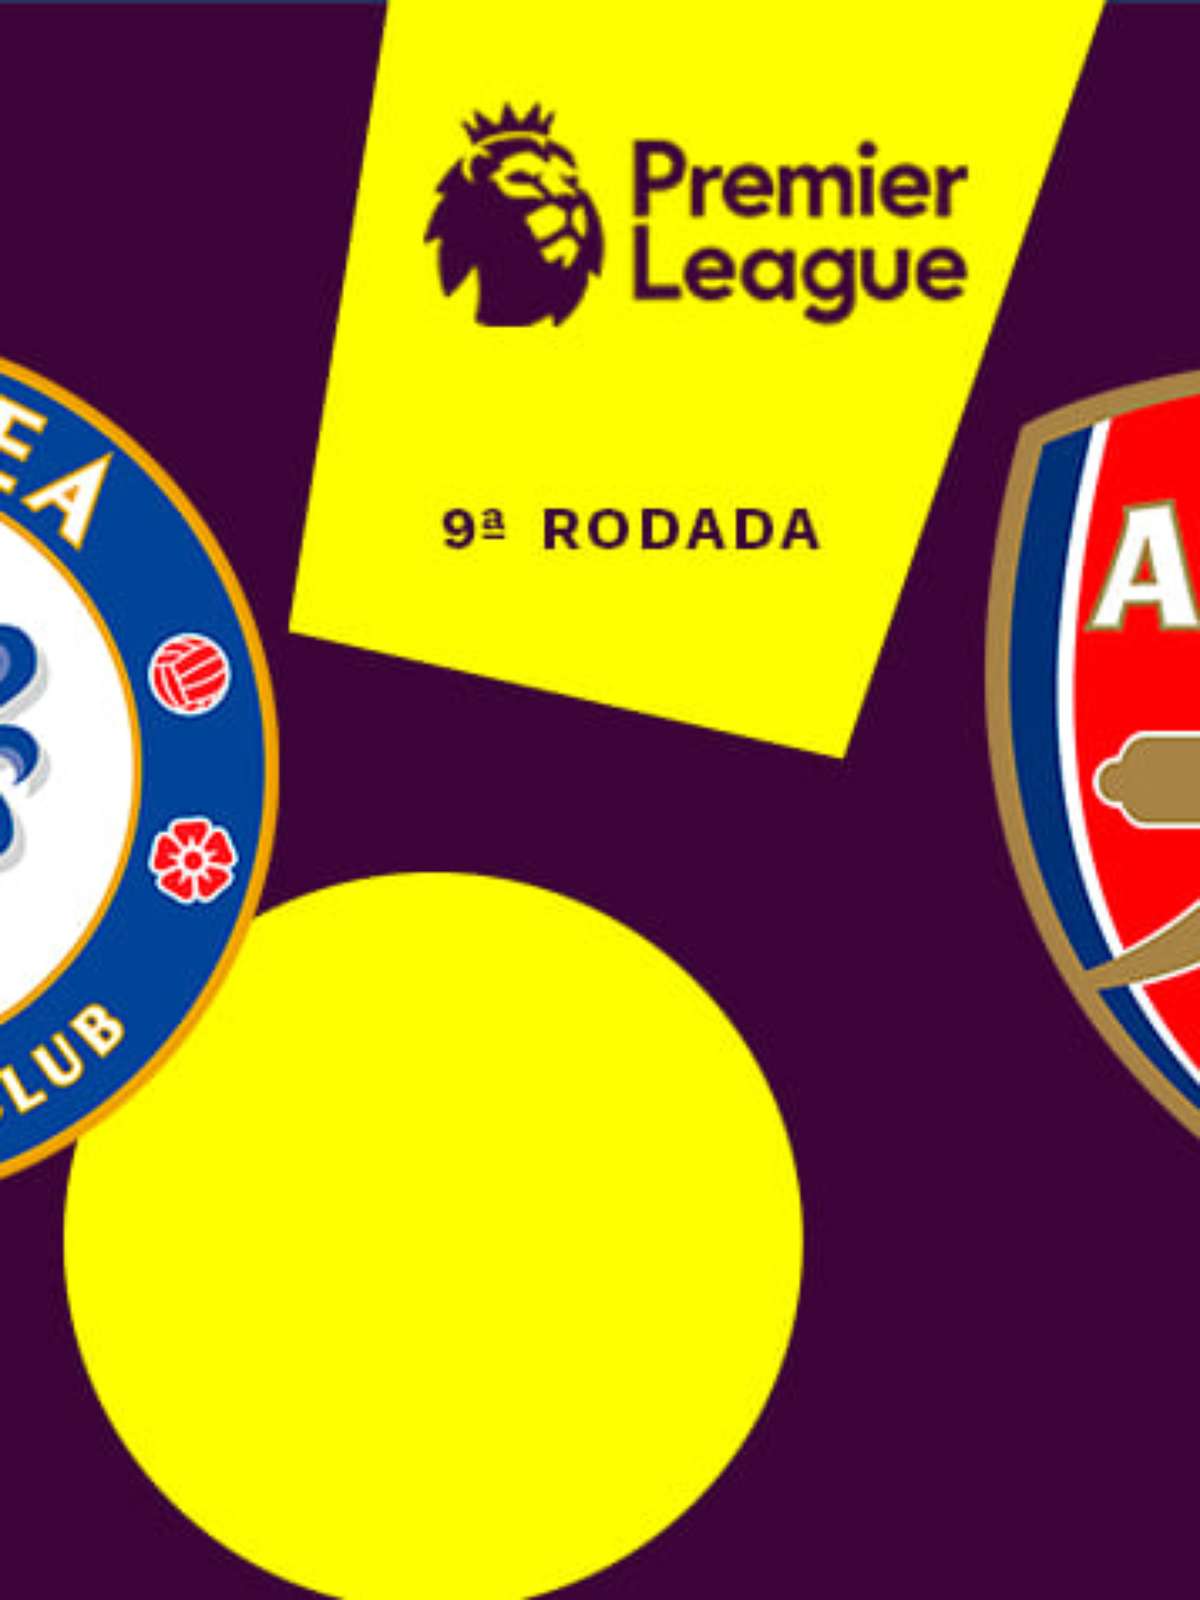 Arsenal x Chelsea: onde assistir ao vivo e o horário do jogo de